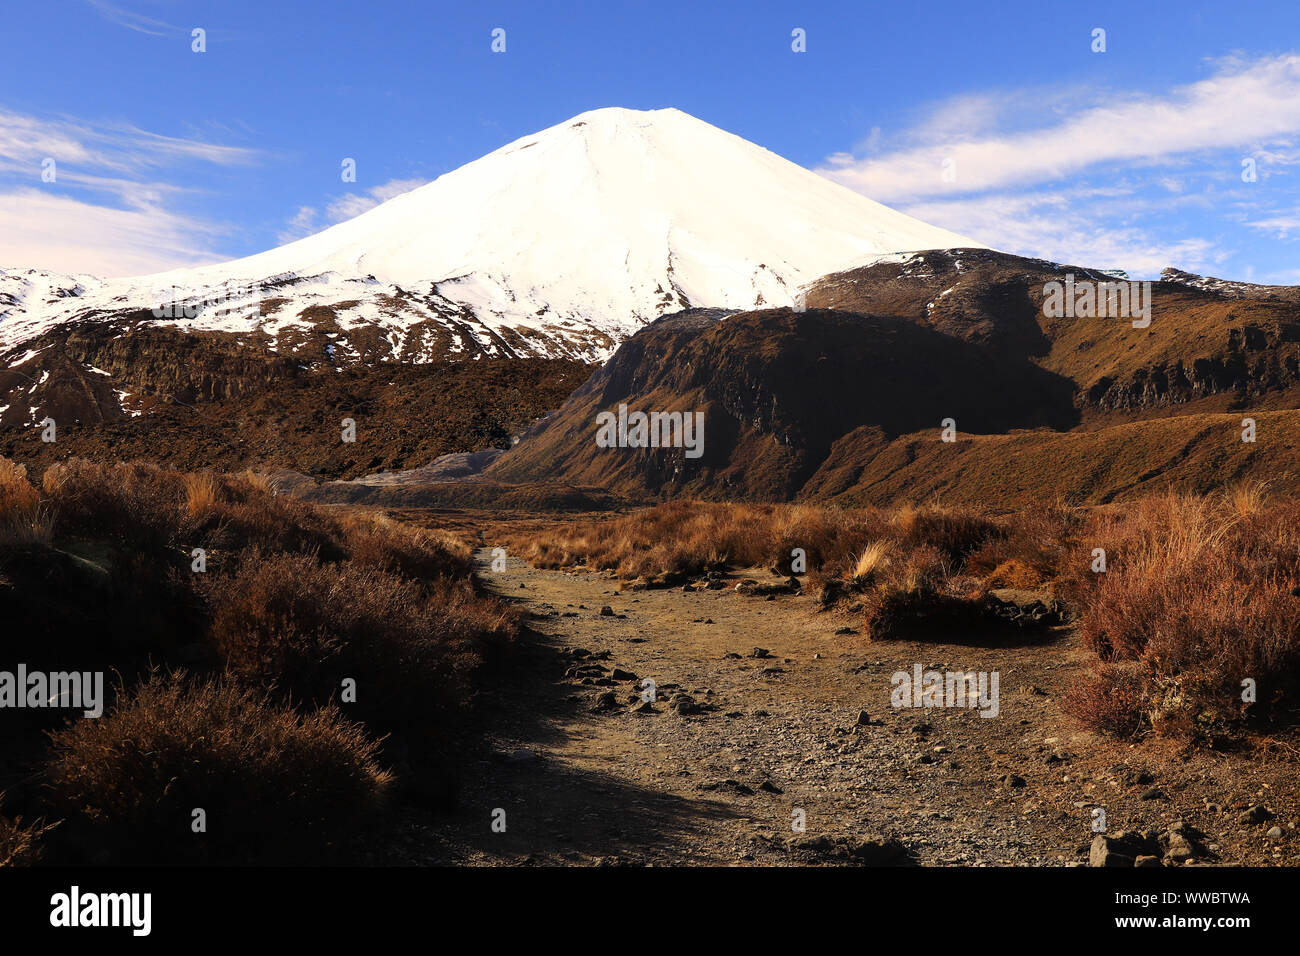 Traversée de Tongariro en hiver,le mont ngauruhoe, la grande marche, Nouvelle-Zélande, Tonagariro National park Banque D'Images